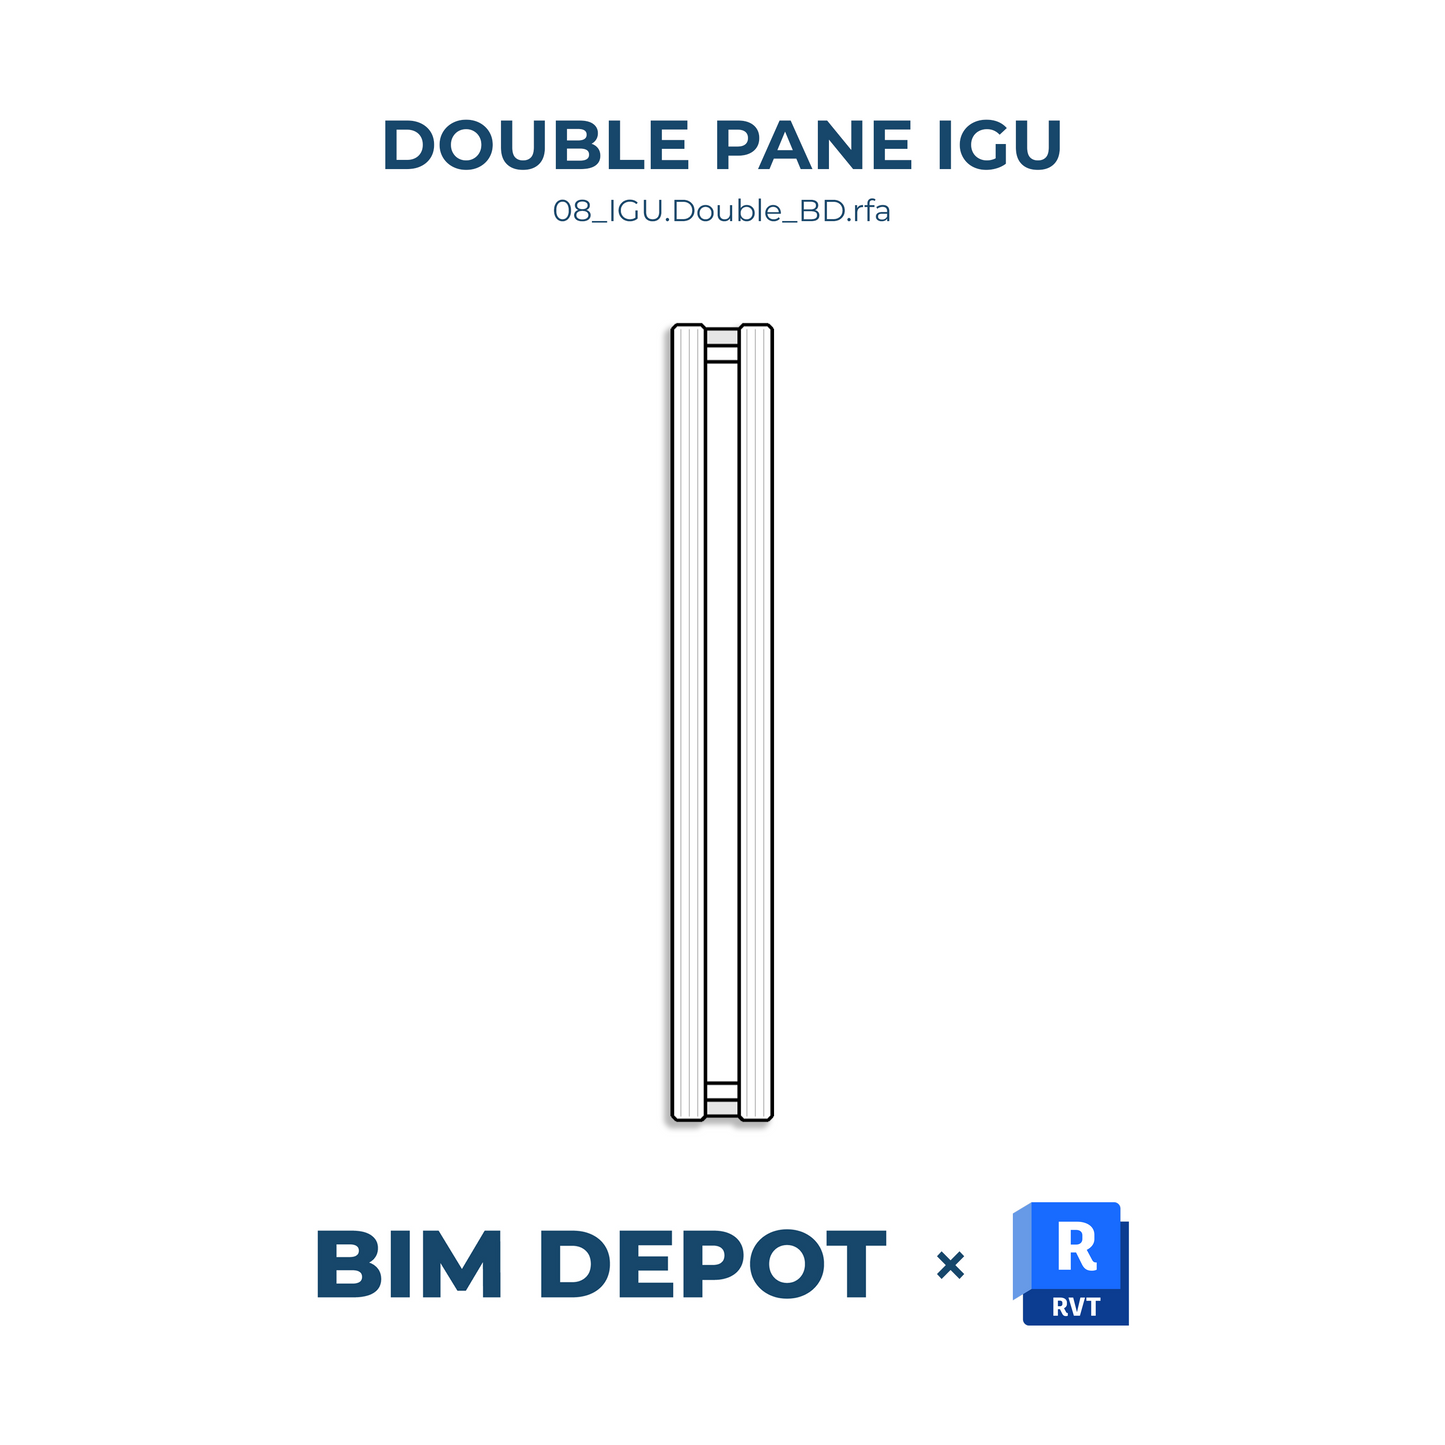 Double Pane IGU Detail Component